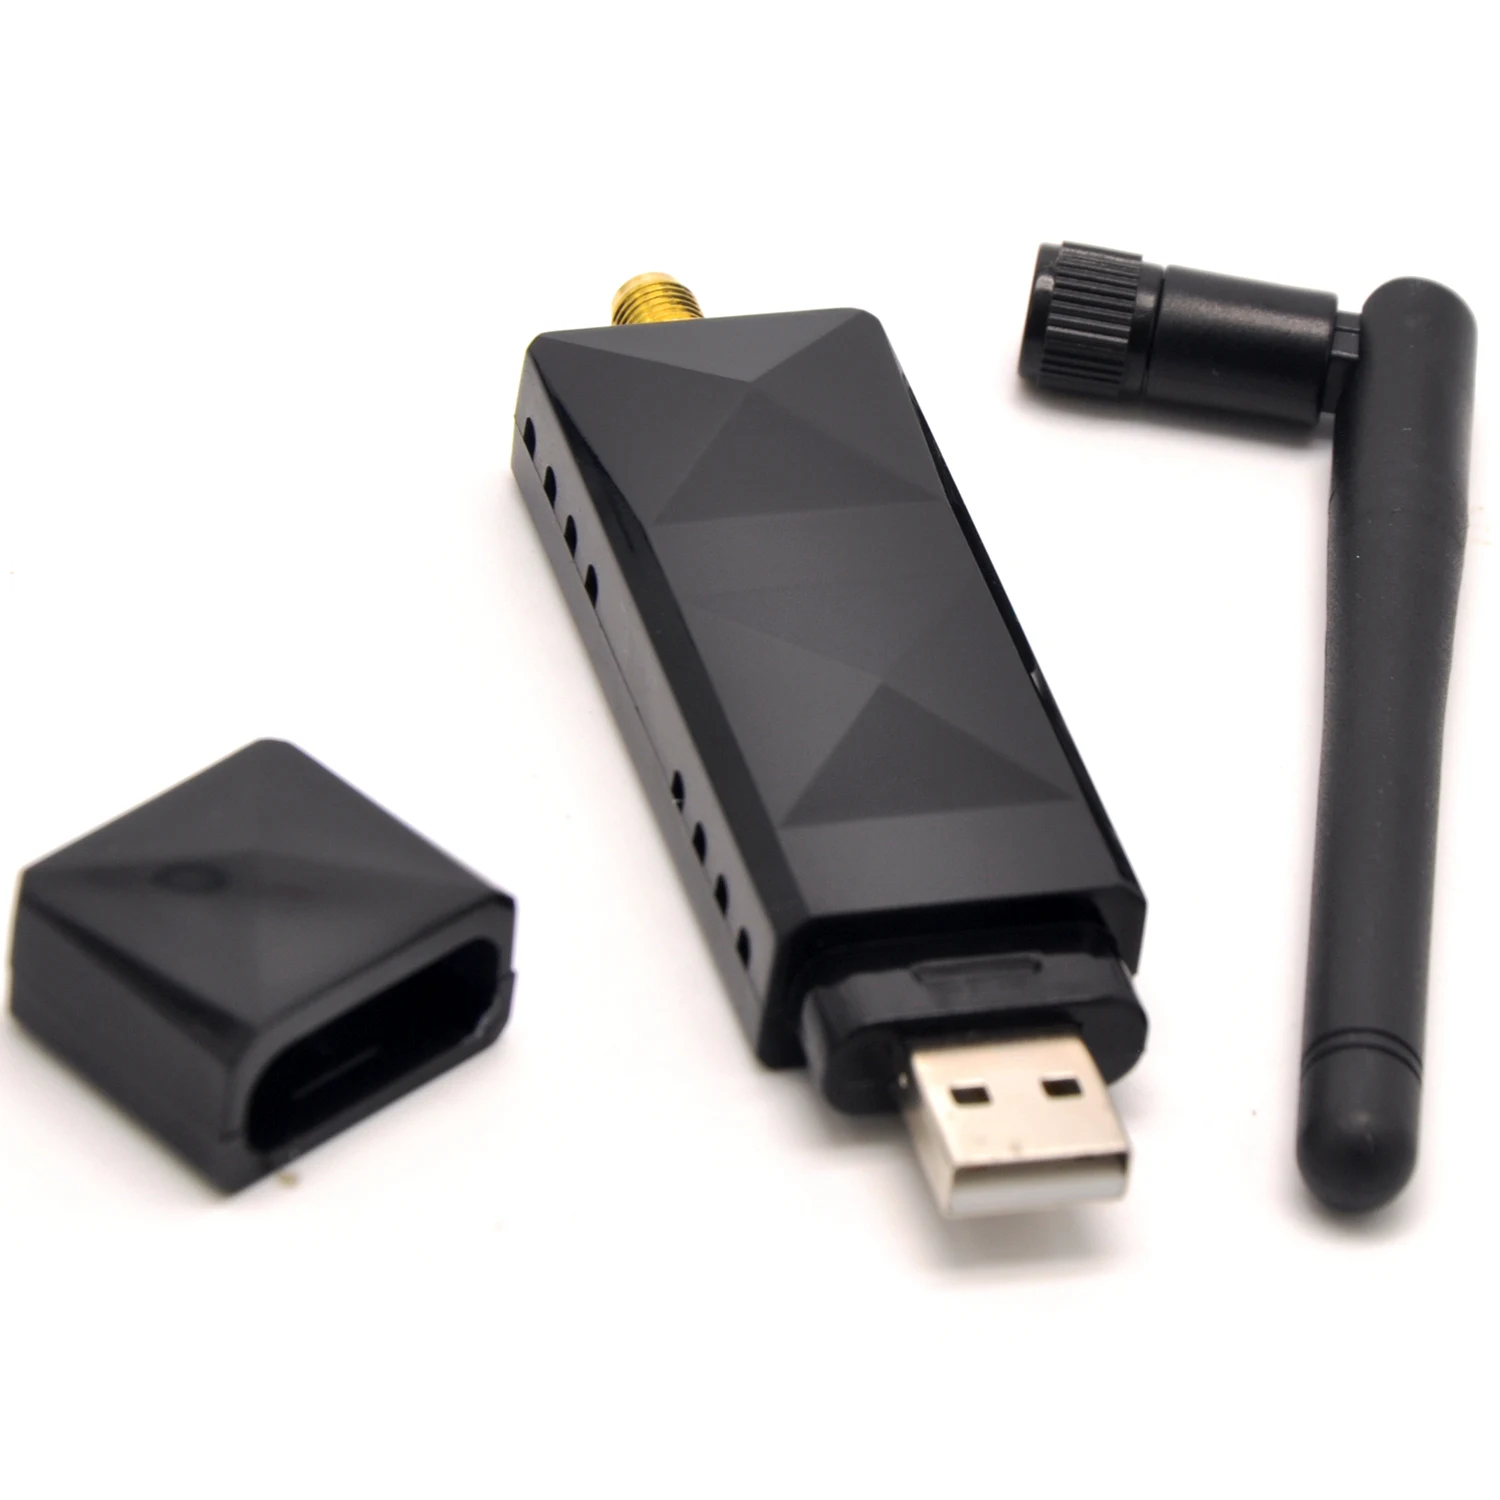 Generic Adaptateur USB WiFi sans Fil 150Mbps WLAN 802.11 b/g/n